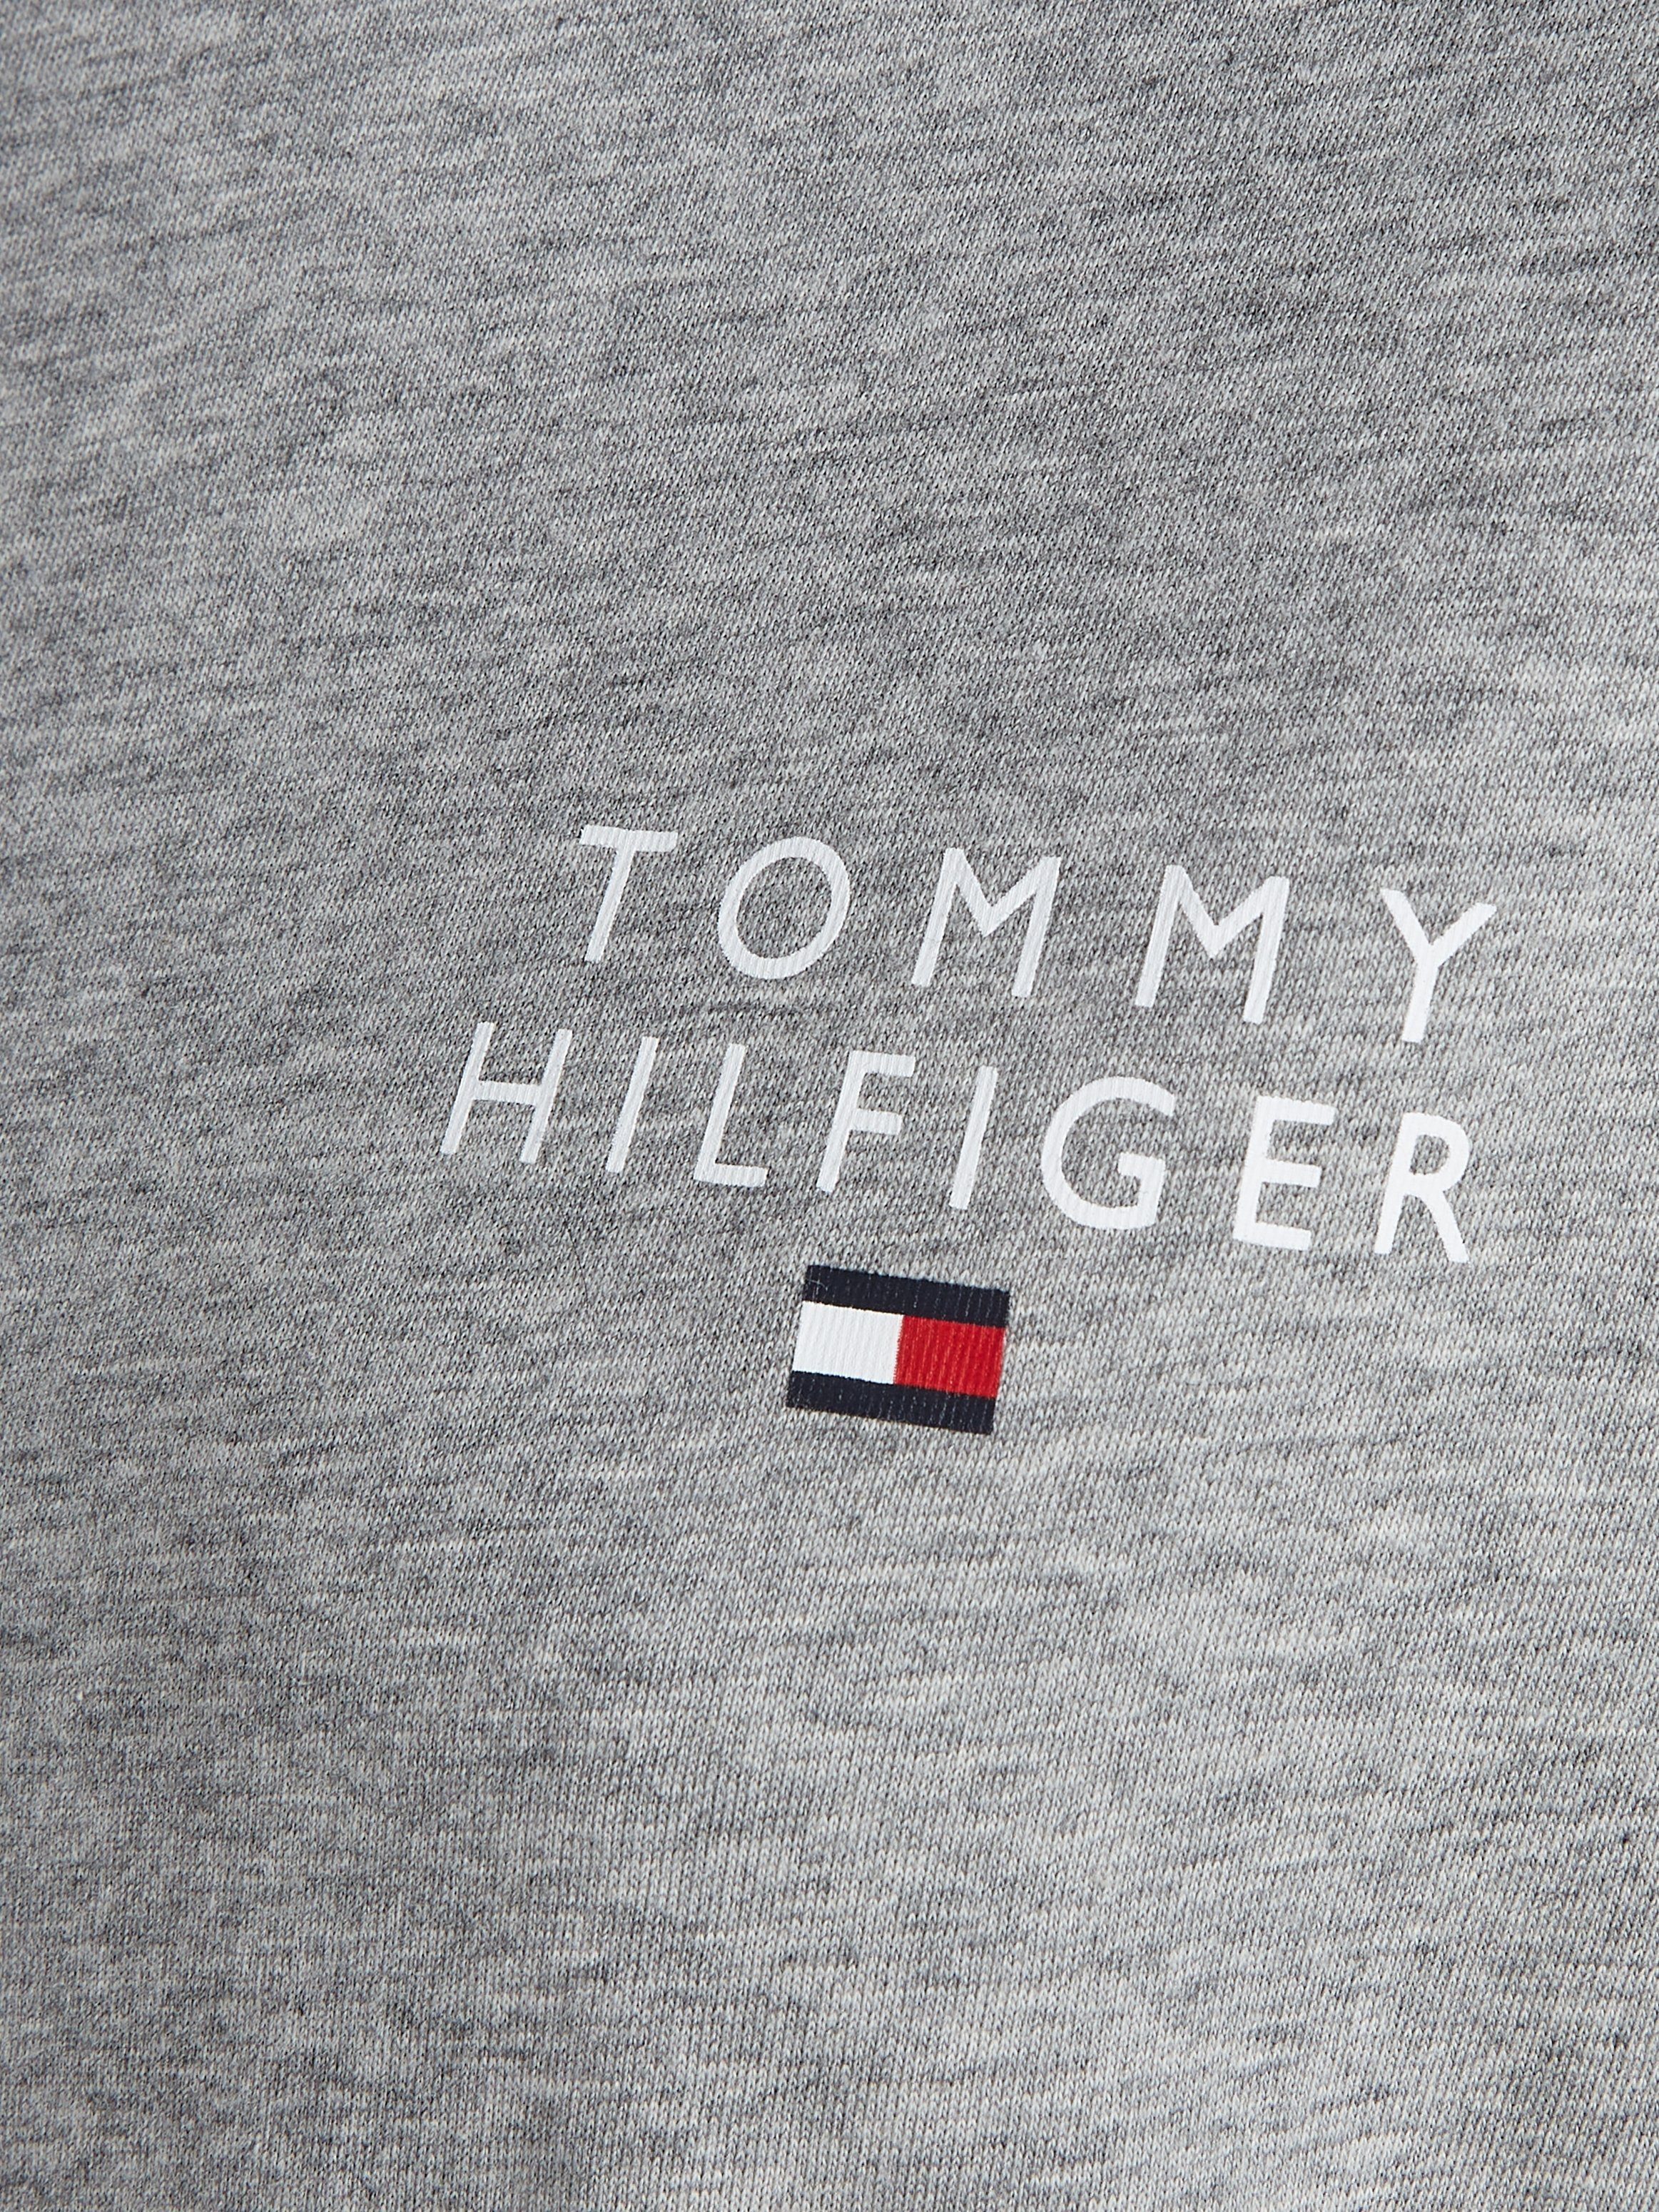 Nachthemd SLEEVE mit Tommy Hilfiger Logoaufdruck Underwear Tommy Hilfiger SHORT T-SHIRT DRESS